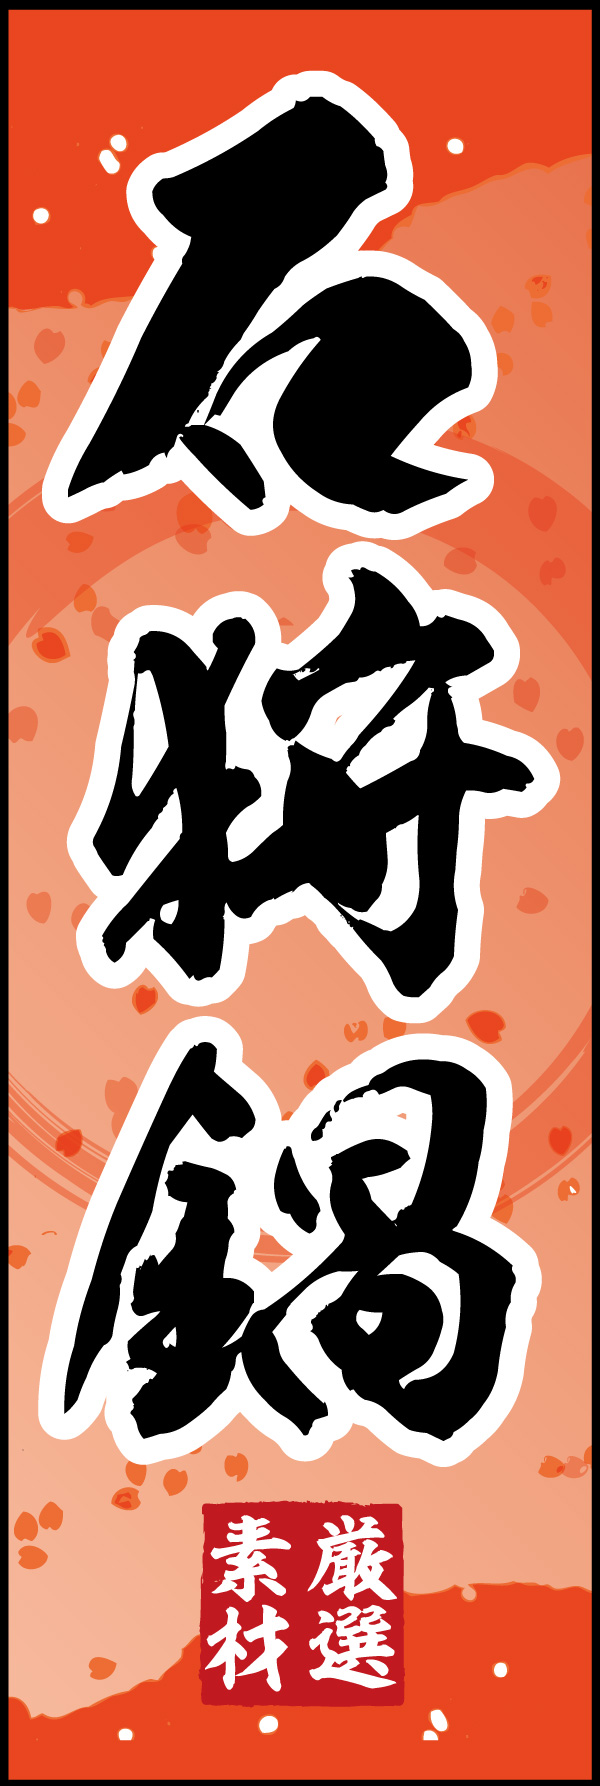 石狩鍋 05 「石狩鍋」ののぼりです。シャケの切り身色をイメージした背景をベースに、筆文字で「和」のイメージを強調してみました。(Y.M)